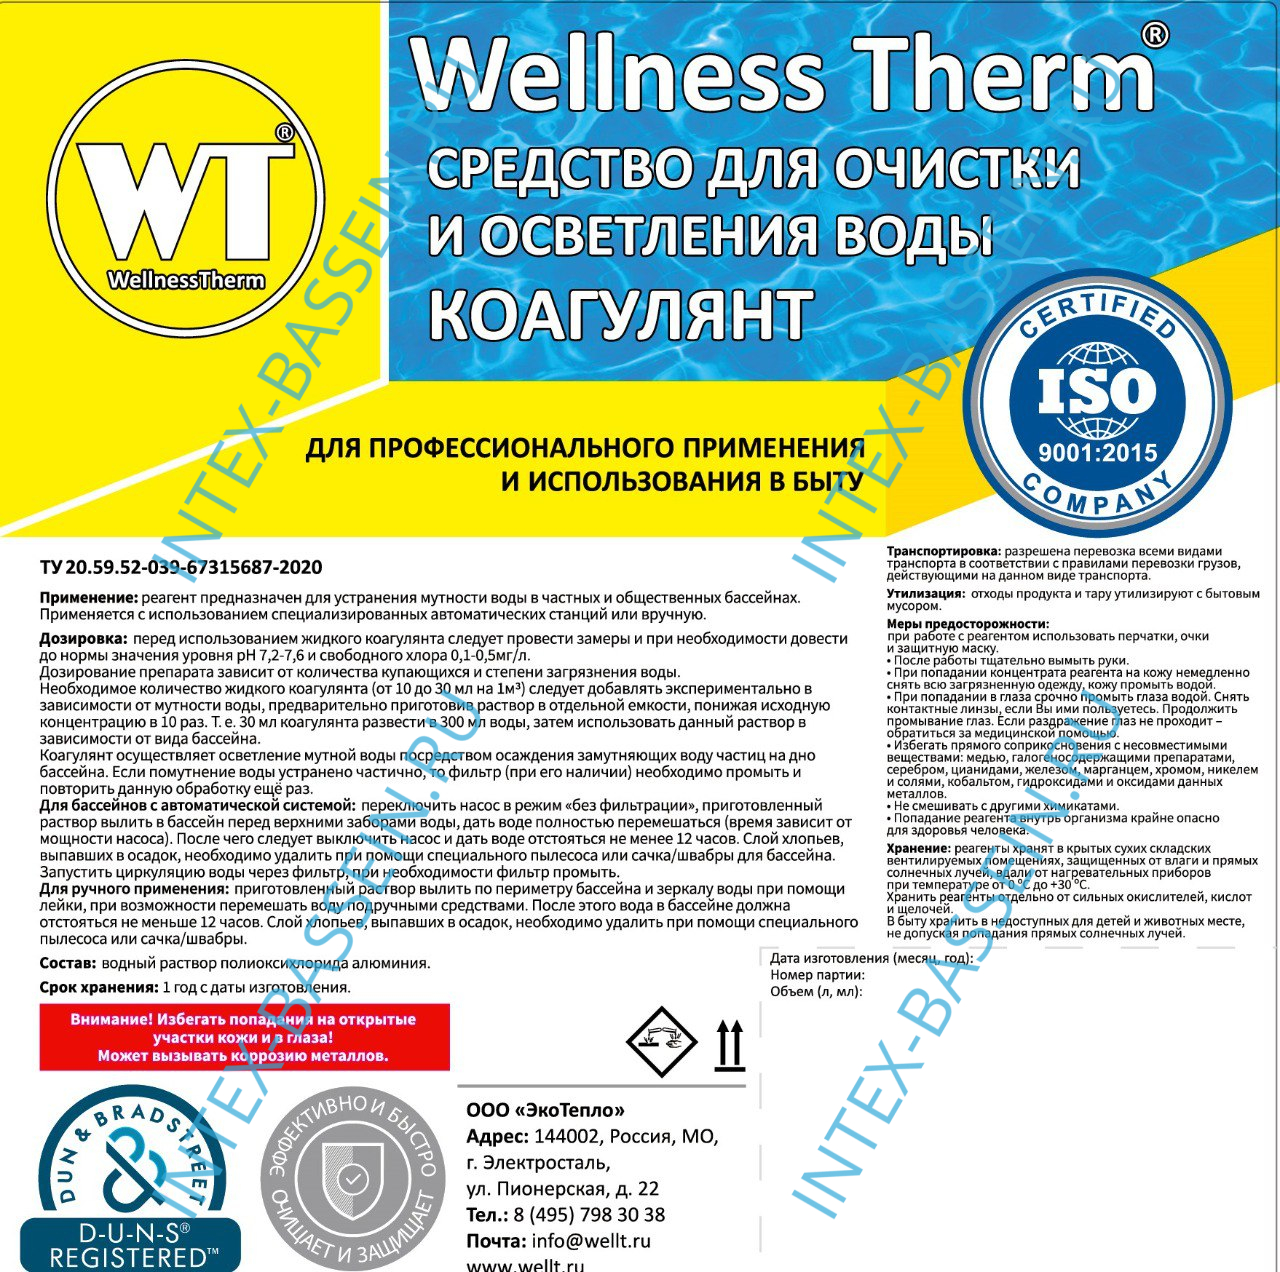 Коагулянт Wellness Therm (средство для очистки и осветления воды) 20 л, арт. 312613